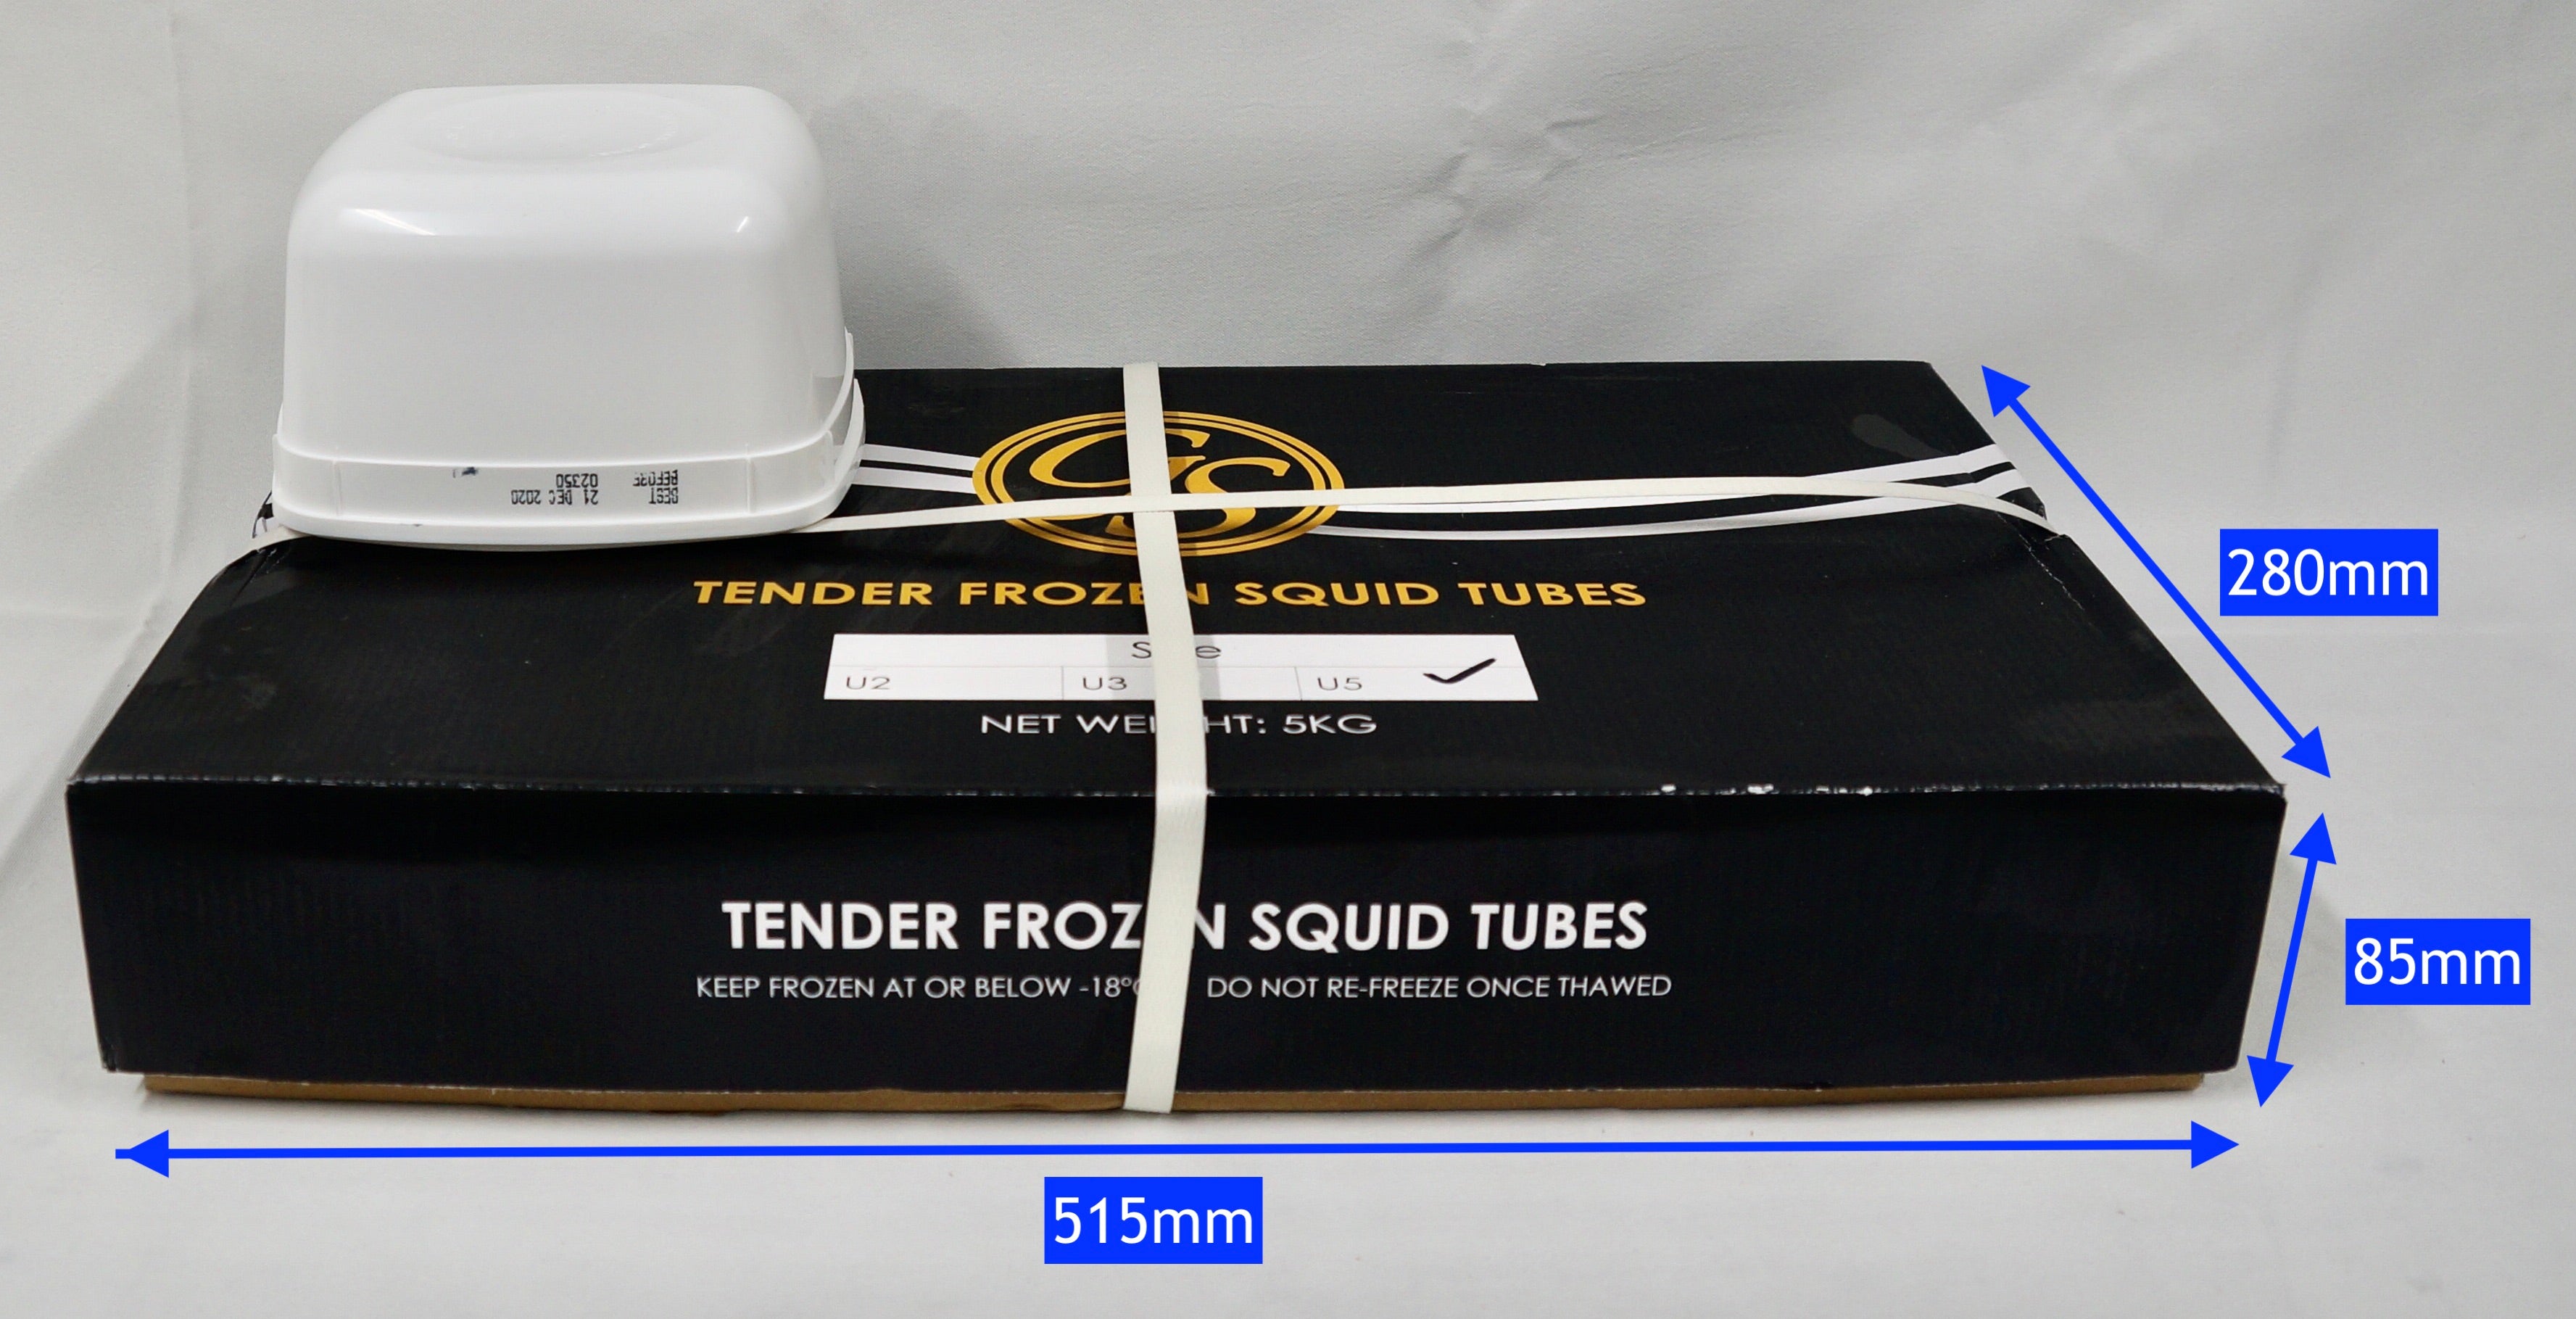 Tender Squid Tubes 5kg Ctn